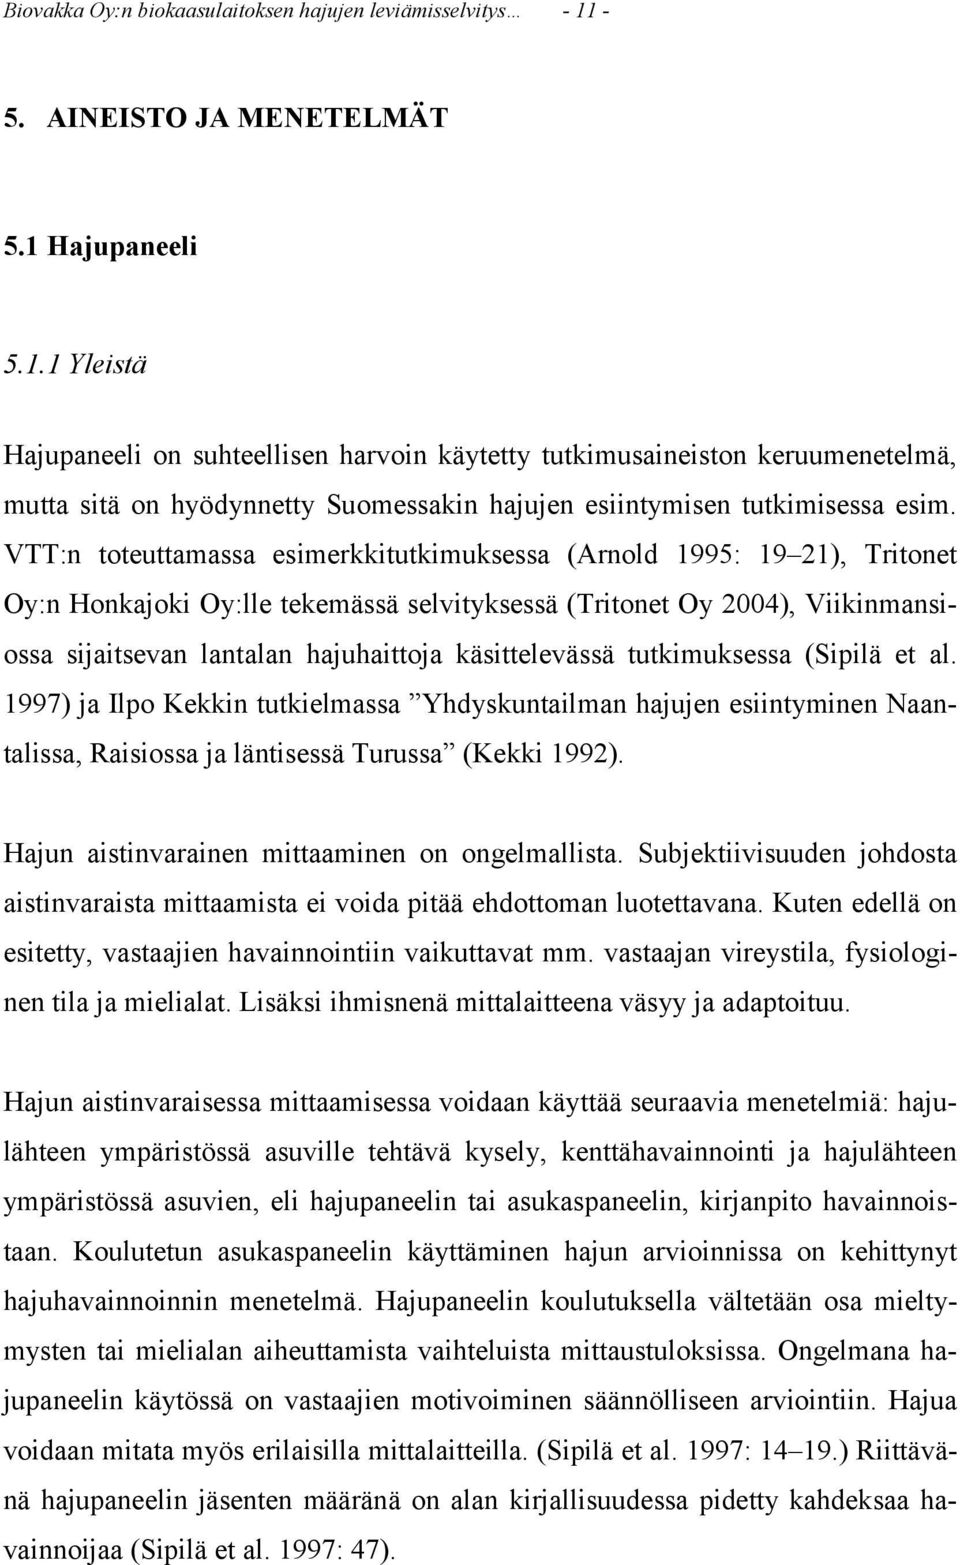 VTT:n toteuttamassa esimerkkitutkimuksessa (Arnold 1995: 19 21), Tritonet Oy:n Honkajoki Oy:lle tekemässä selvityksessä (Tritonet Oy 2004), Viikinmansiossa sijaitsevan lantalan hajuhaittoja